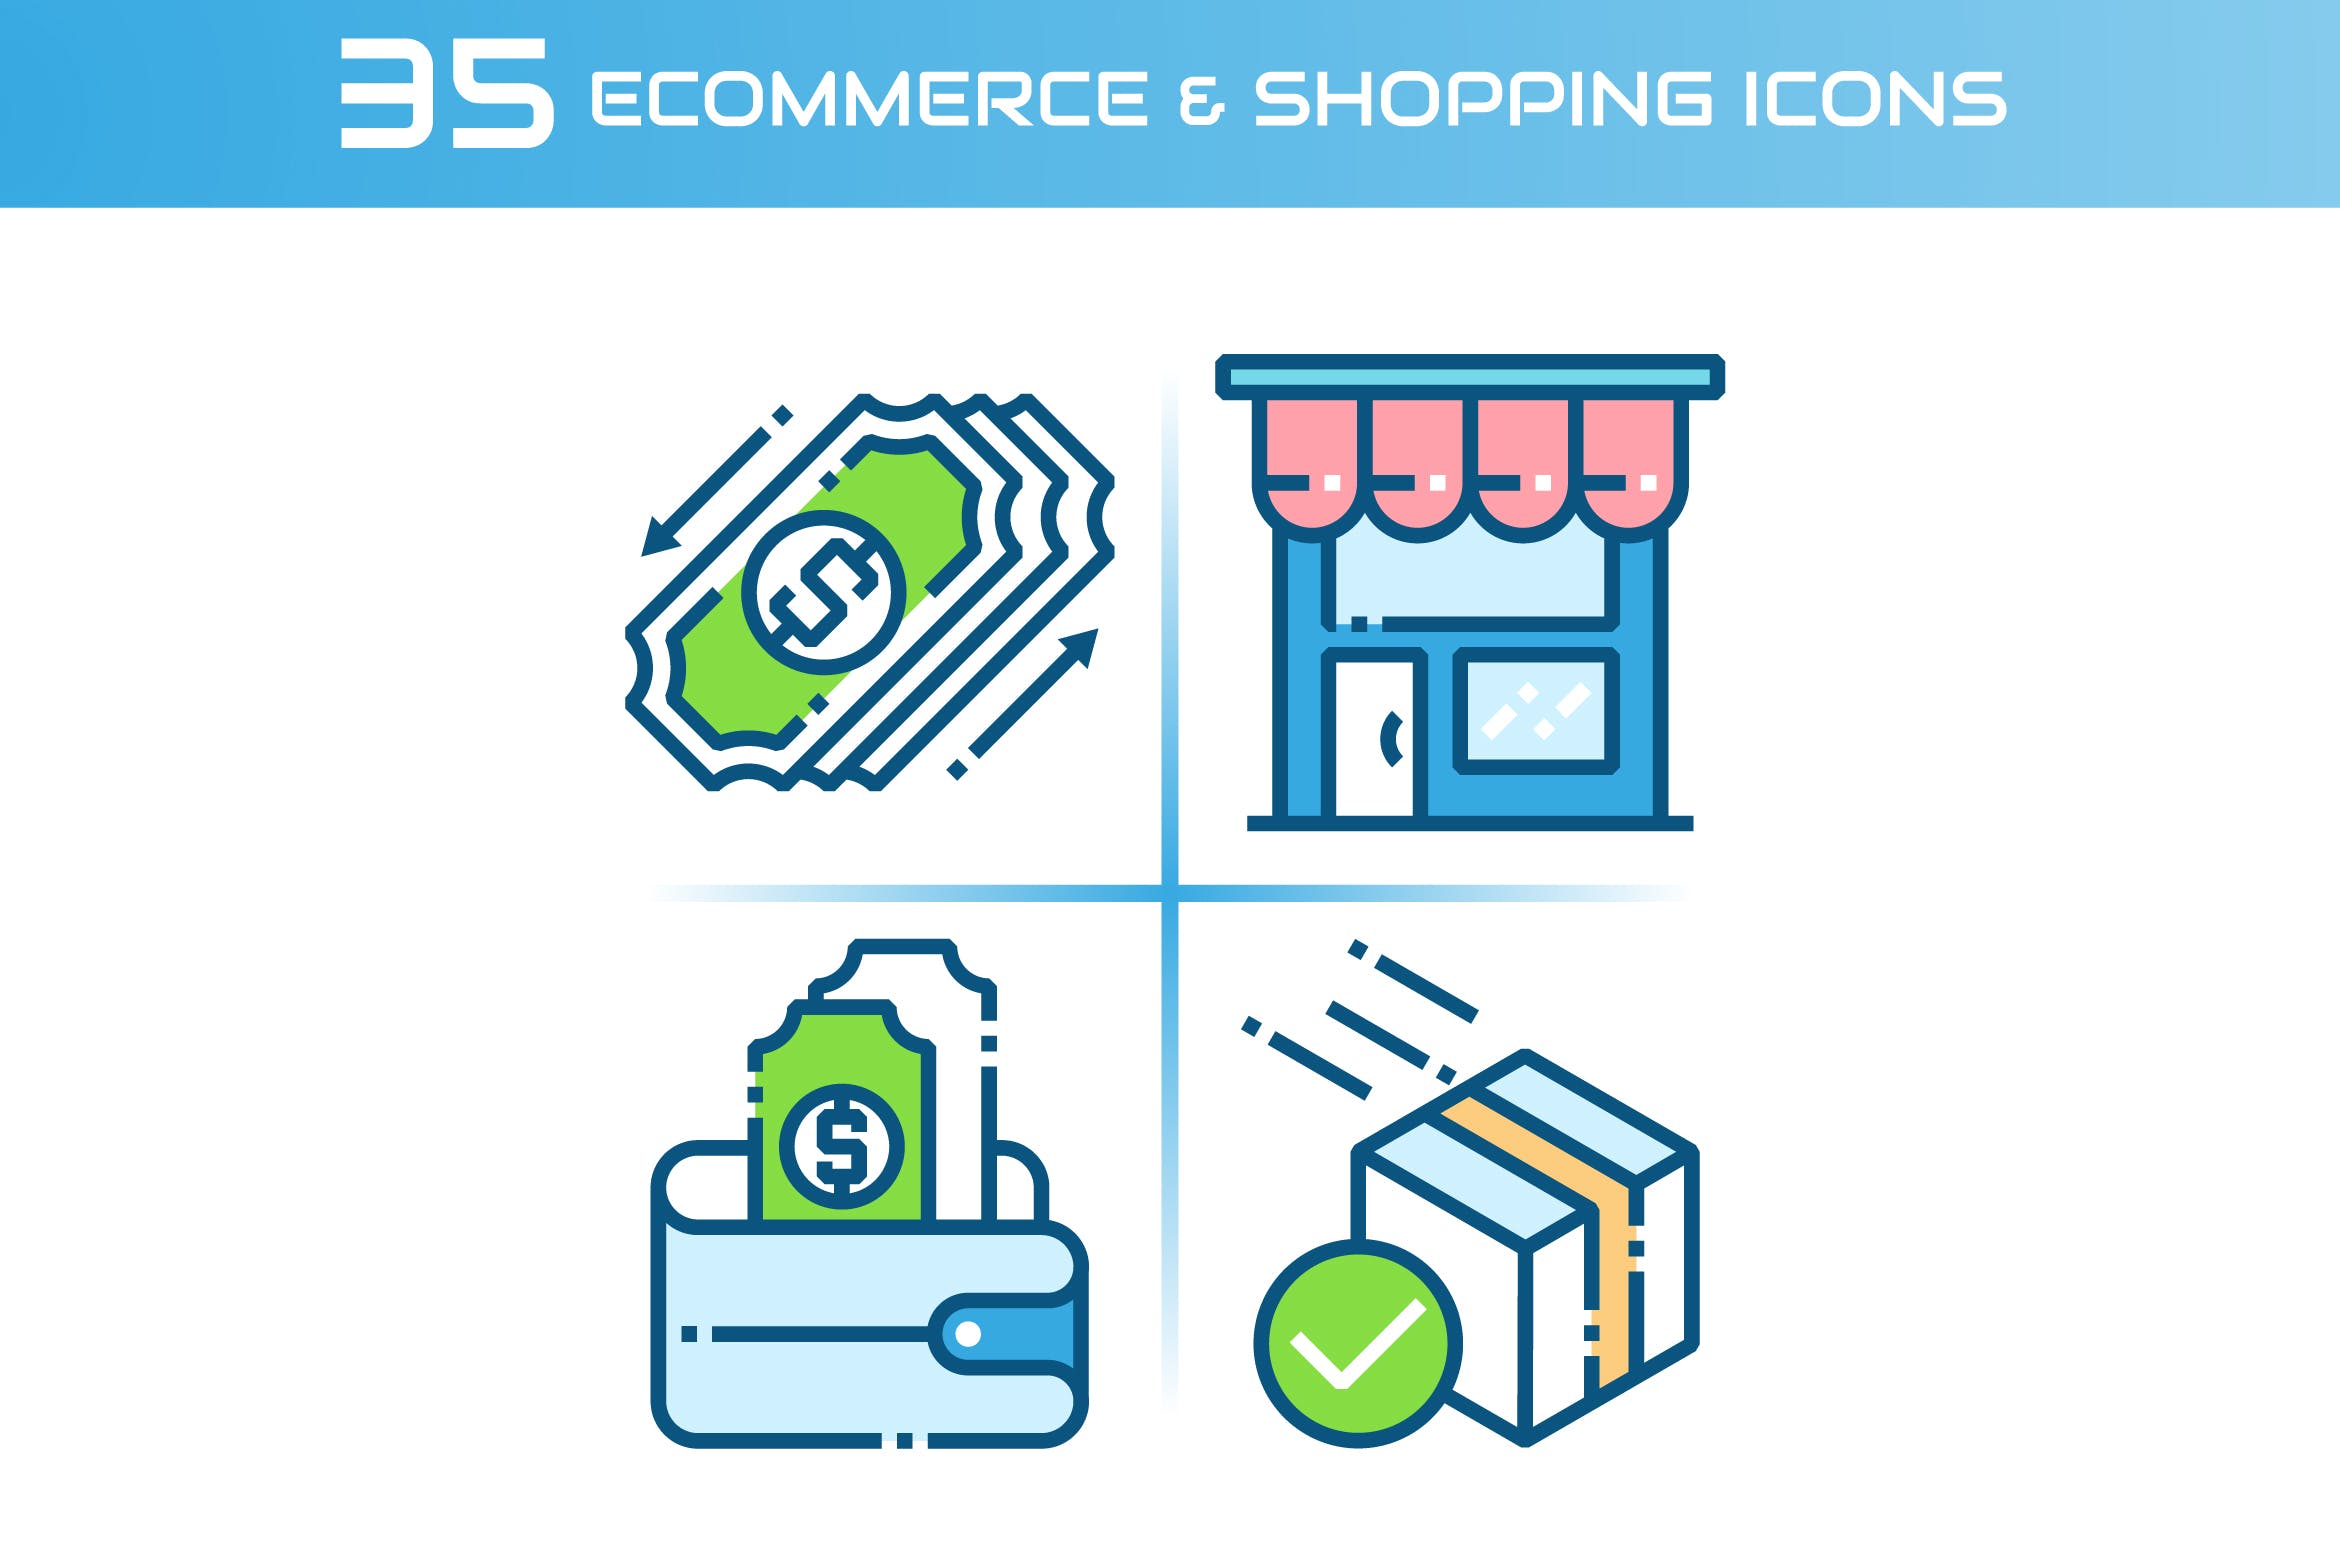 35枚电子商务&购物主题矢量16设计素材网精选图标 E-commerce and Shopping Icons插图